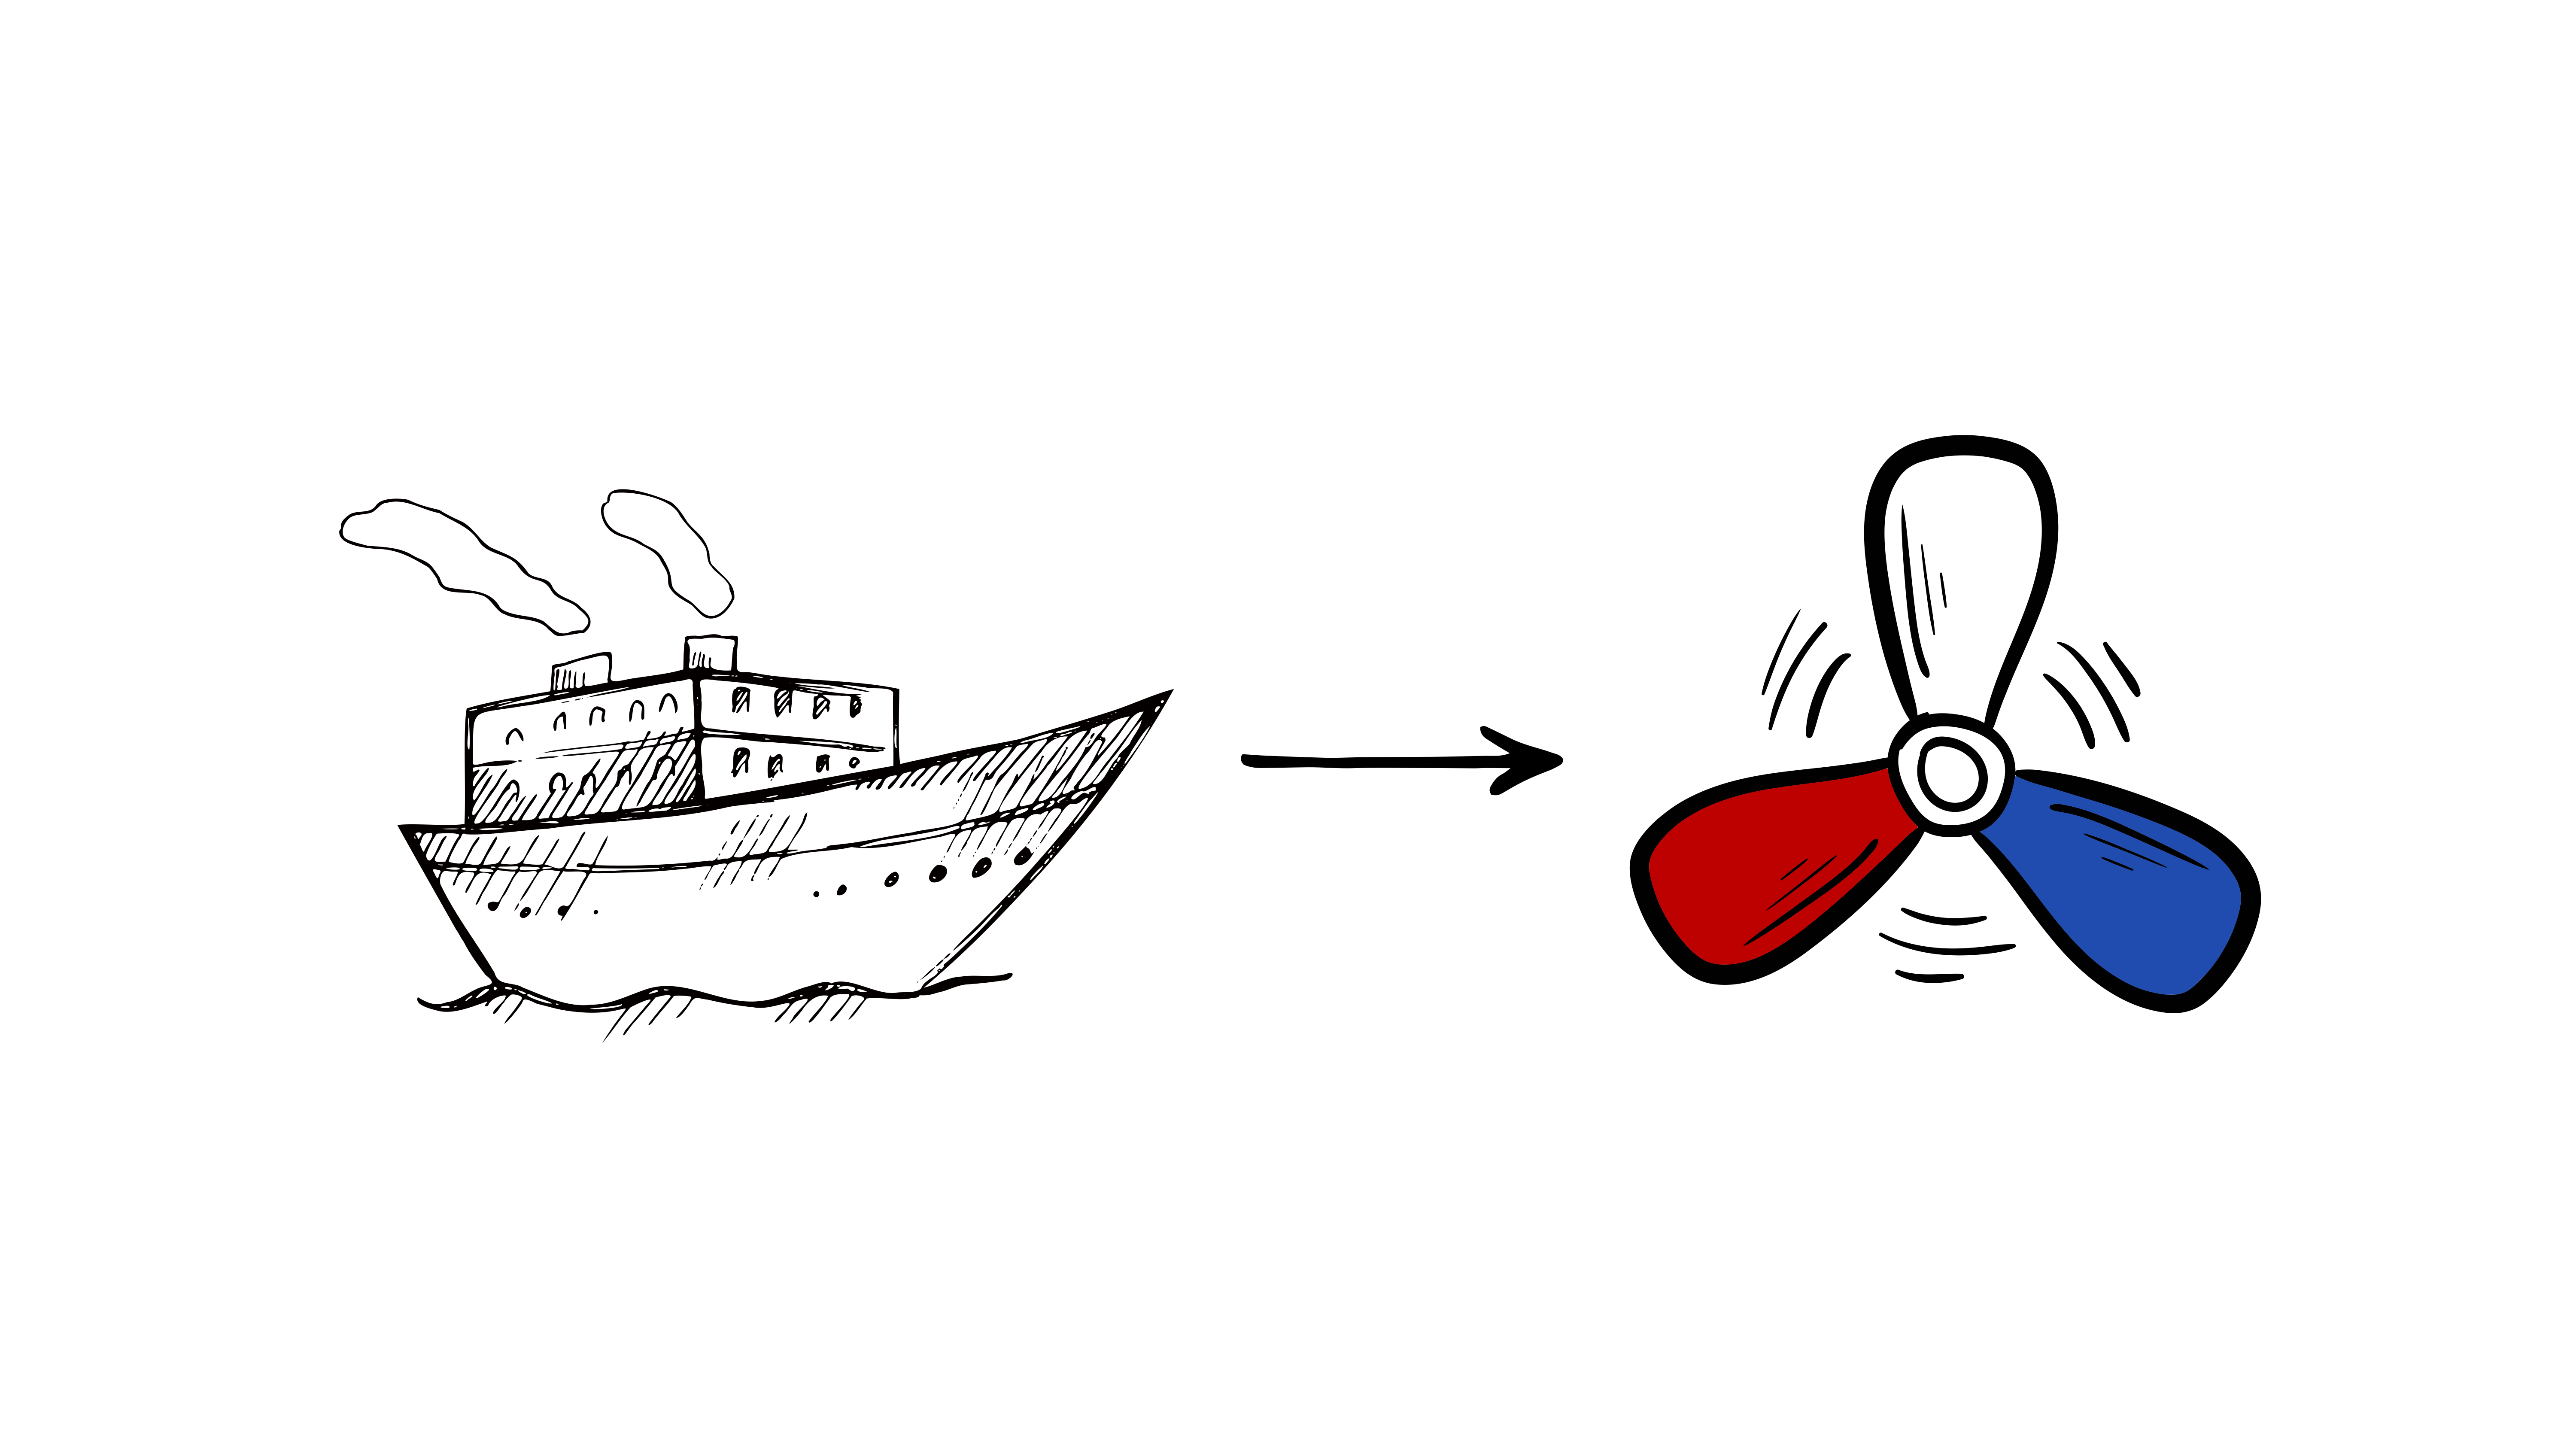 Josef Ressel vynalezl lodní šroub a posunul svět od parníků